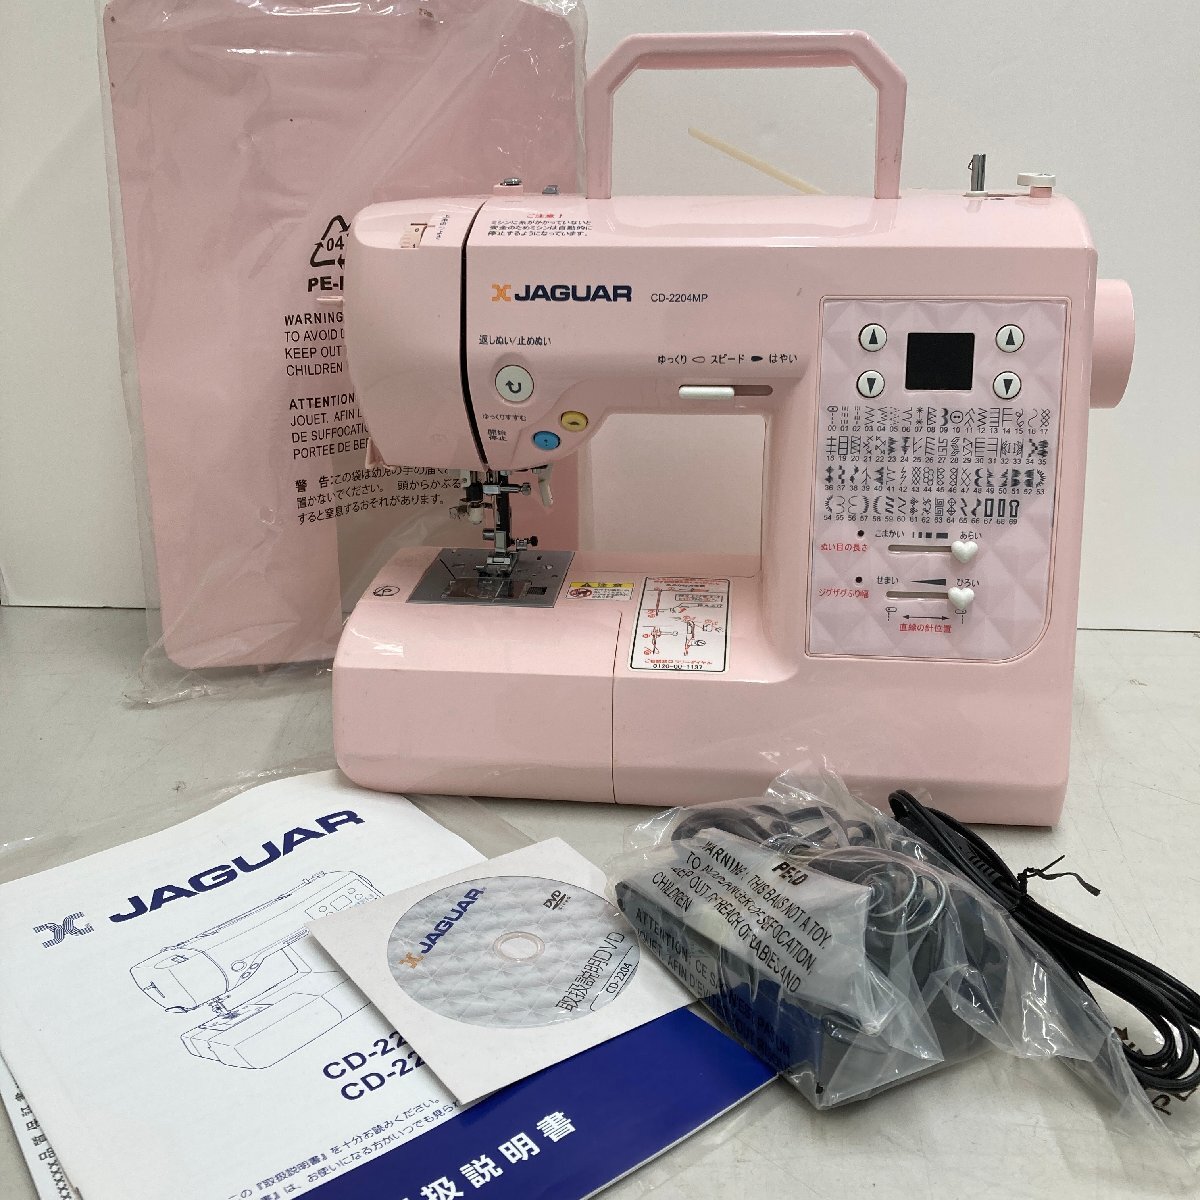 **[6] JAGUAR Jaguar CD-2204MP компьютер швейная машина для бытового использования швейная машина Mill ключ розовый электризация проверка settled 06/041806m**